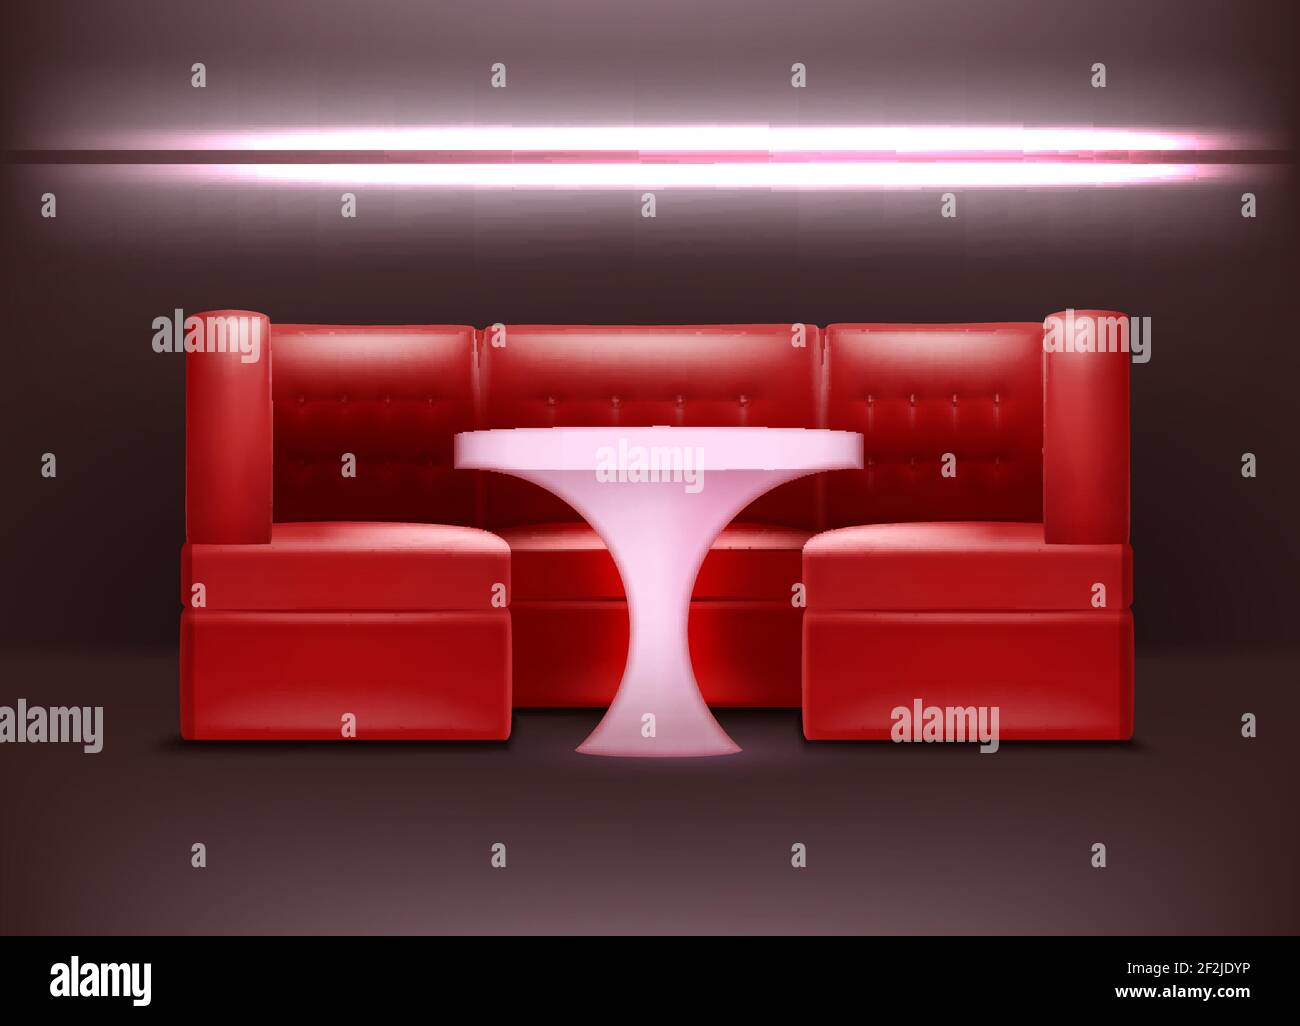 Décoration de boîte de nuit Vector dans des tons rouges avec rétro-éclairage, fauteuils et table éclairée Illustration de Vecteur